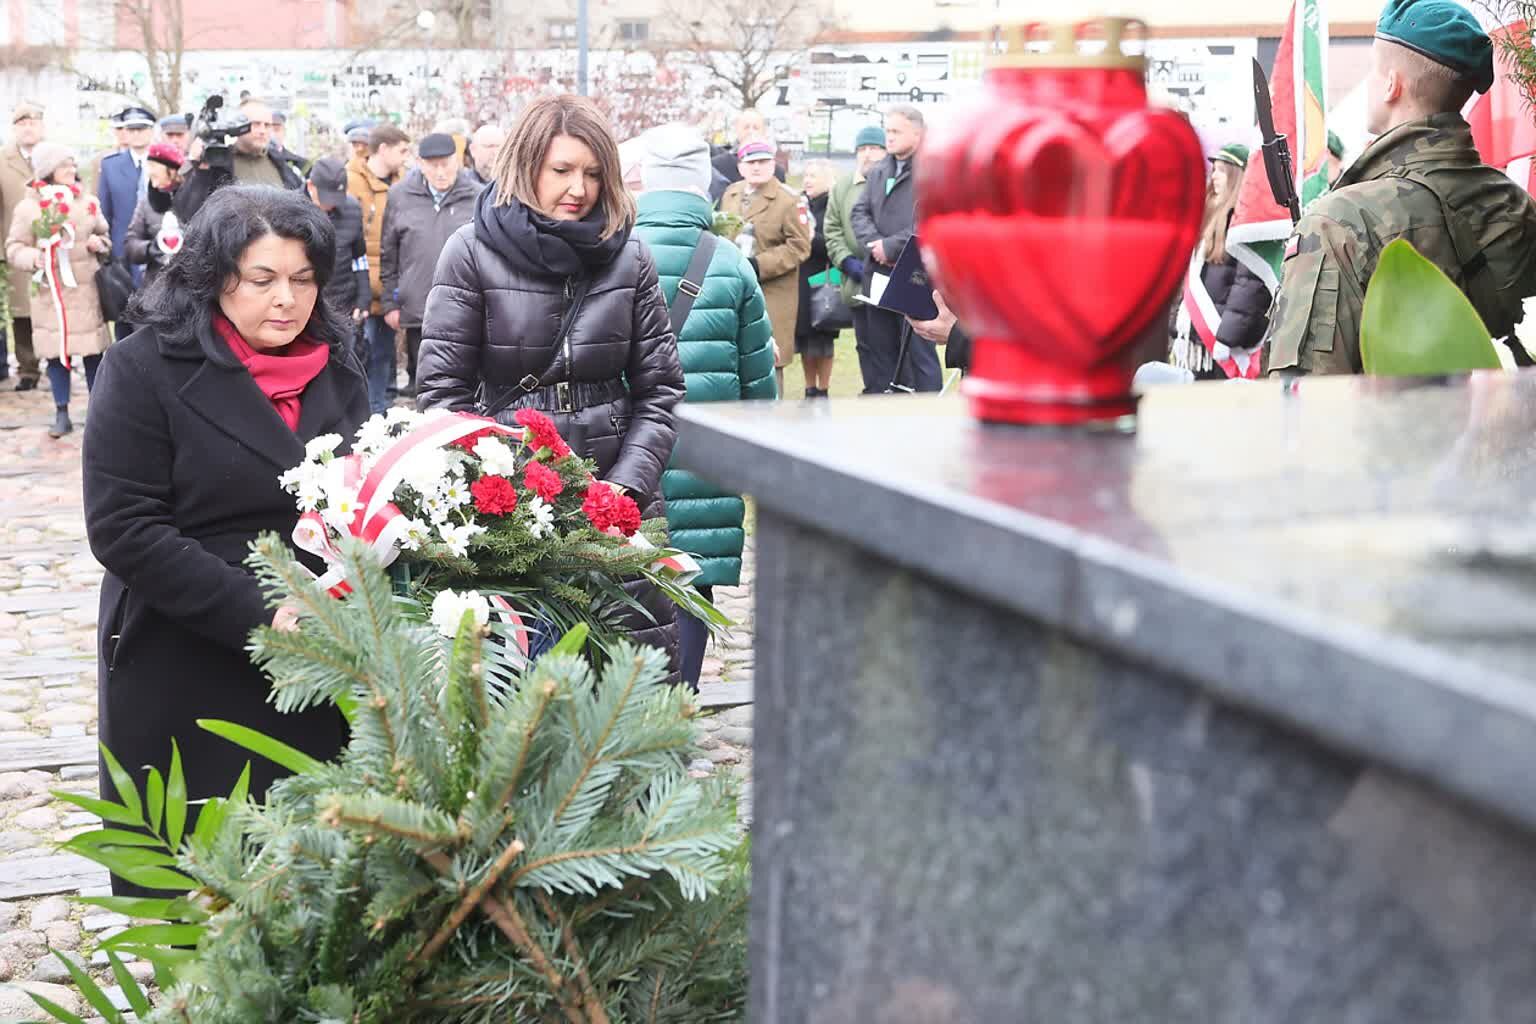 Na zdjęciu dwie kobiety składają kwiaty przy pomniku, w tle obecni są wojskowi, mamy widok na czerwoną znicz-lampę i gałęzie.